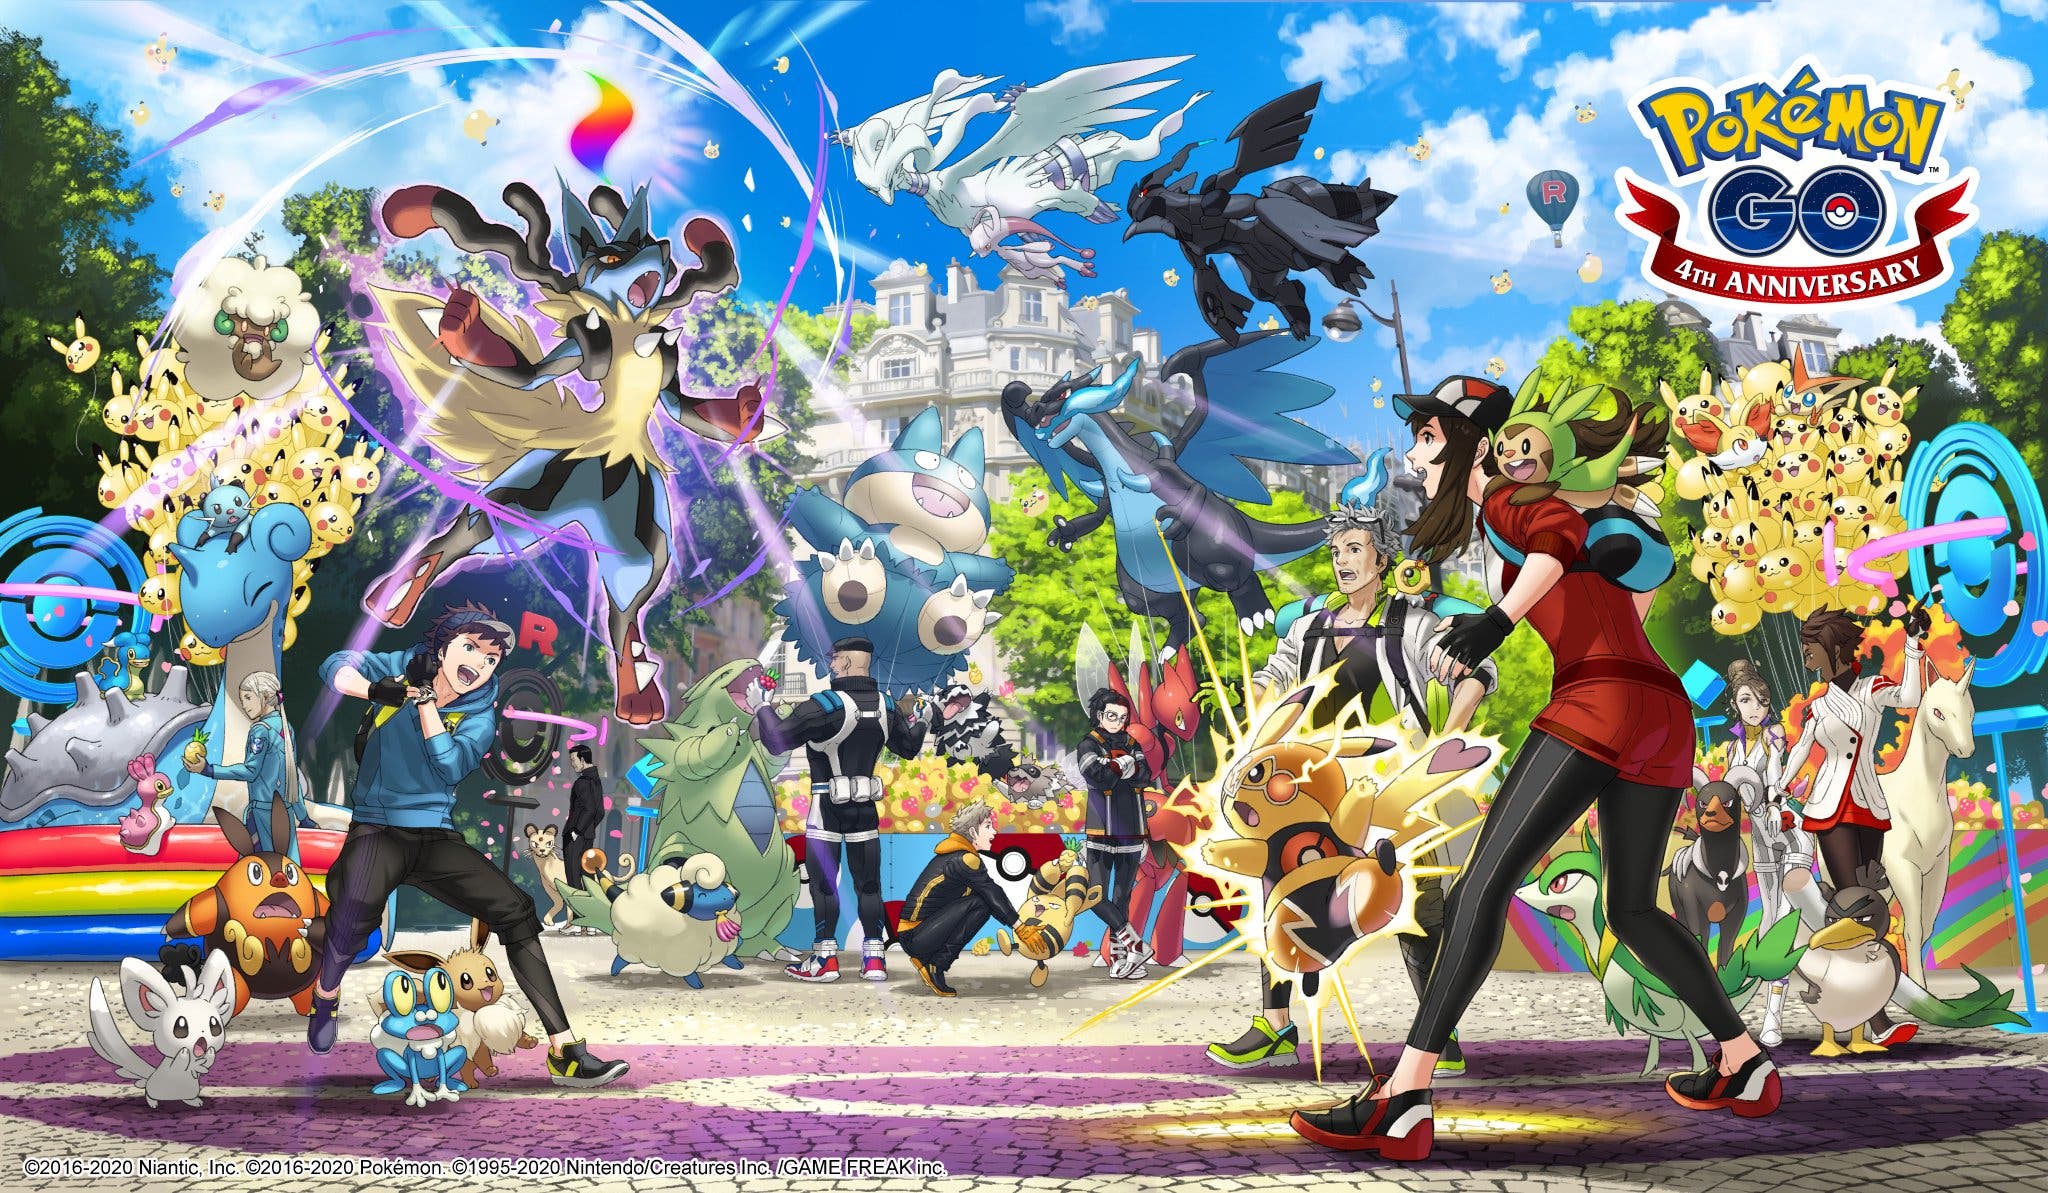 Pokémon GO celebra su 4º aniversario con este arte, donde se muestra la Megaevolución y más